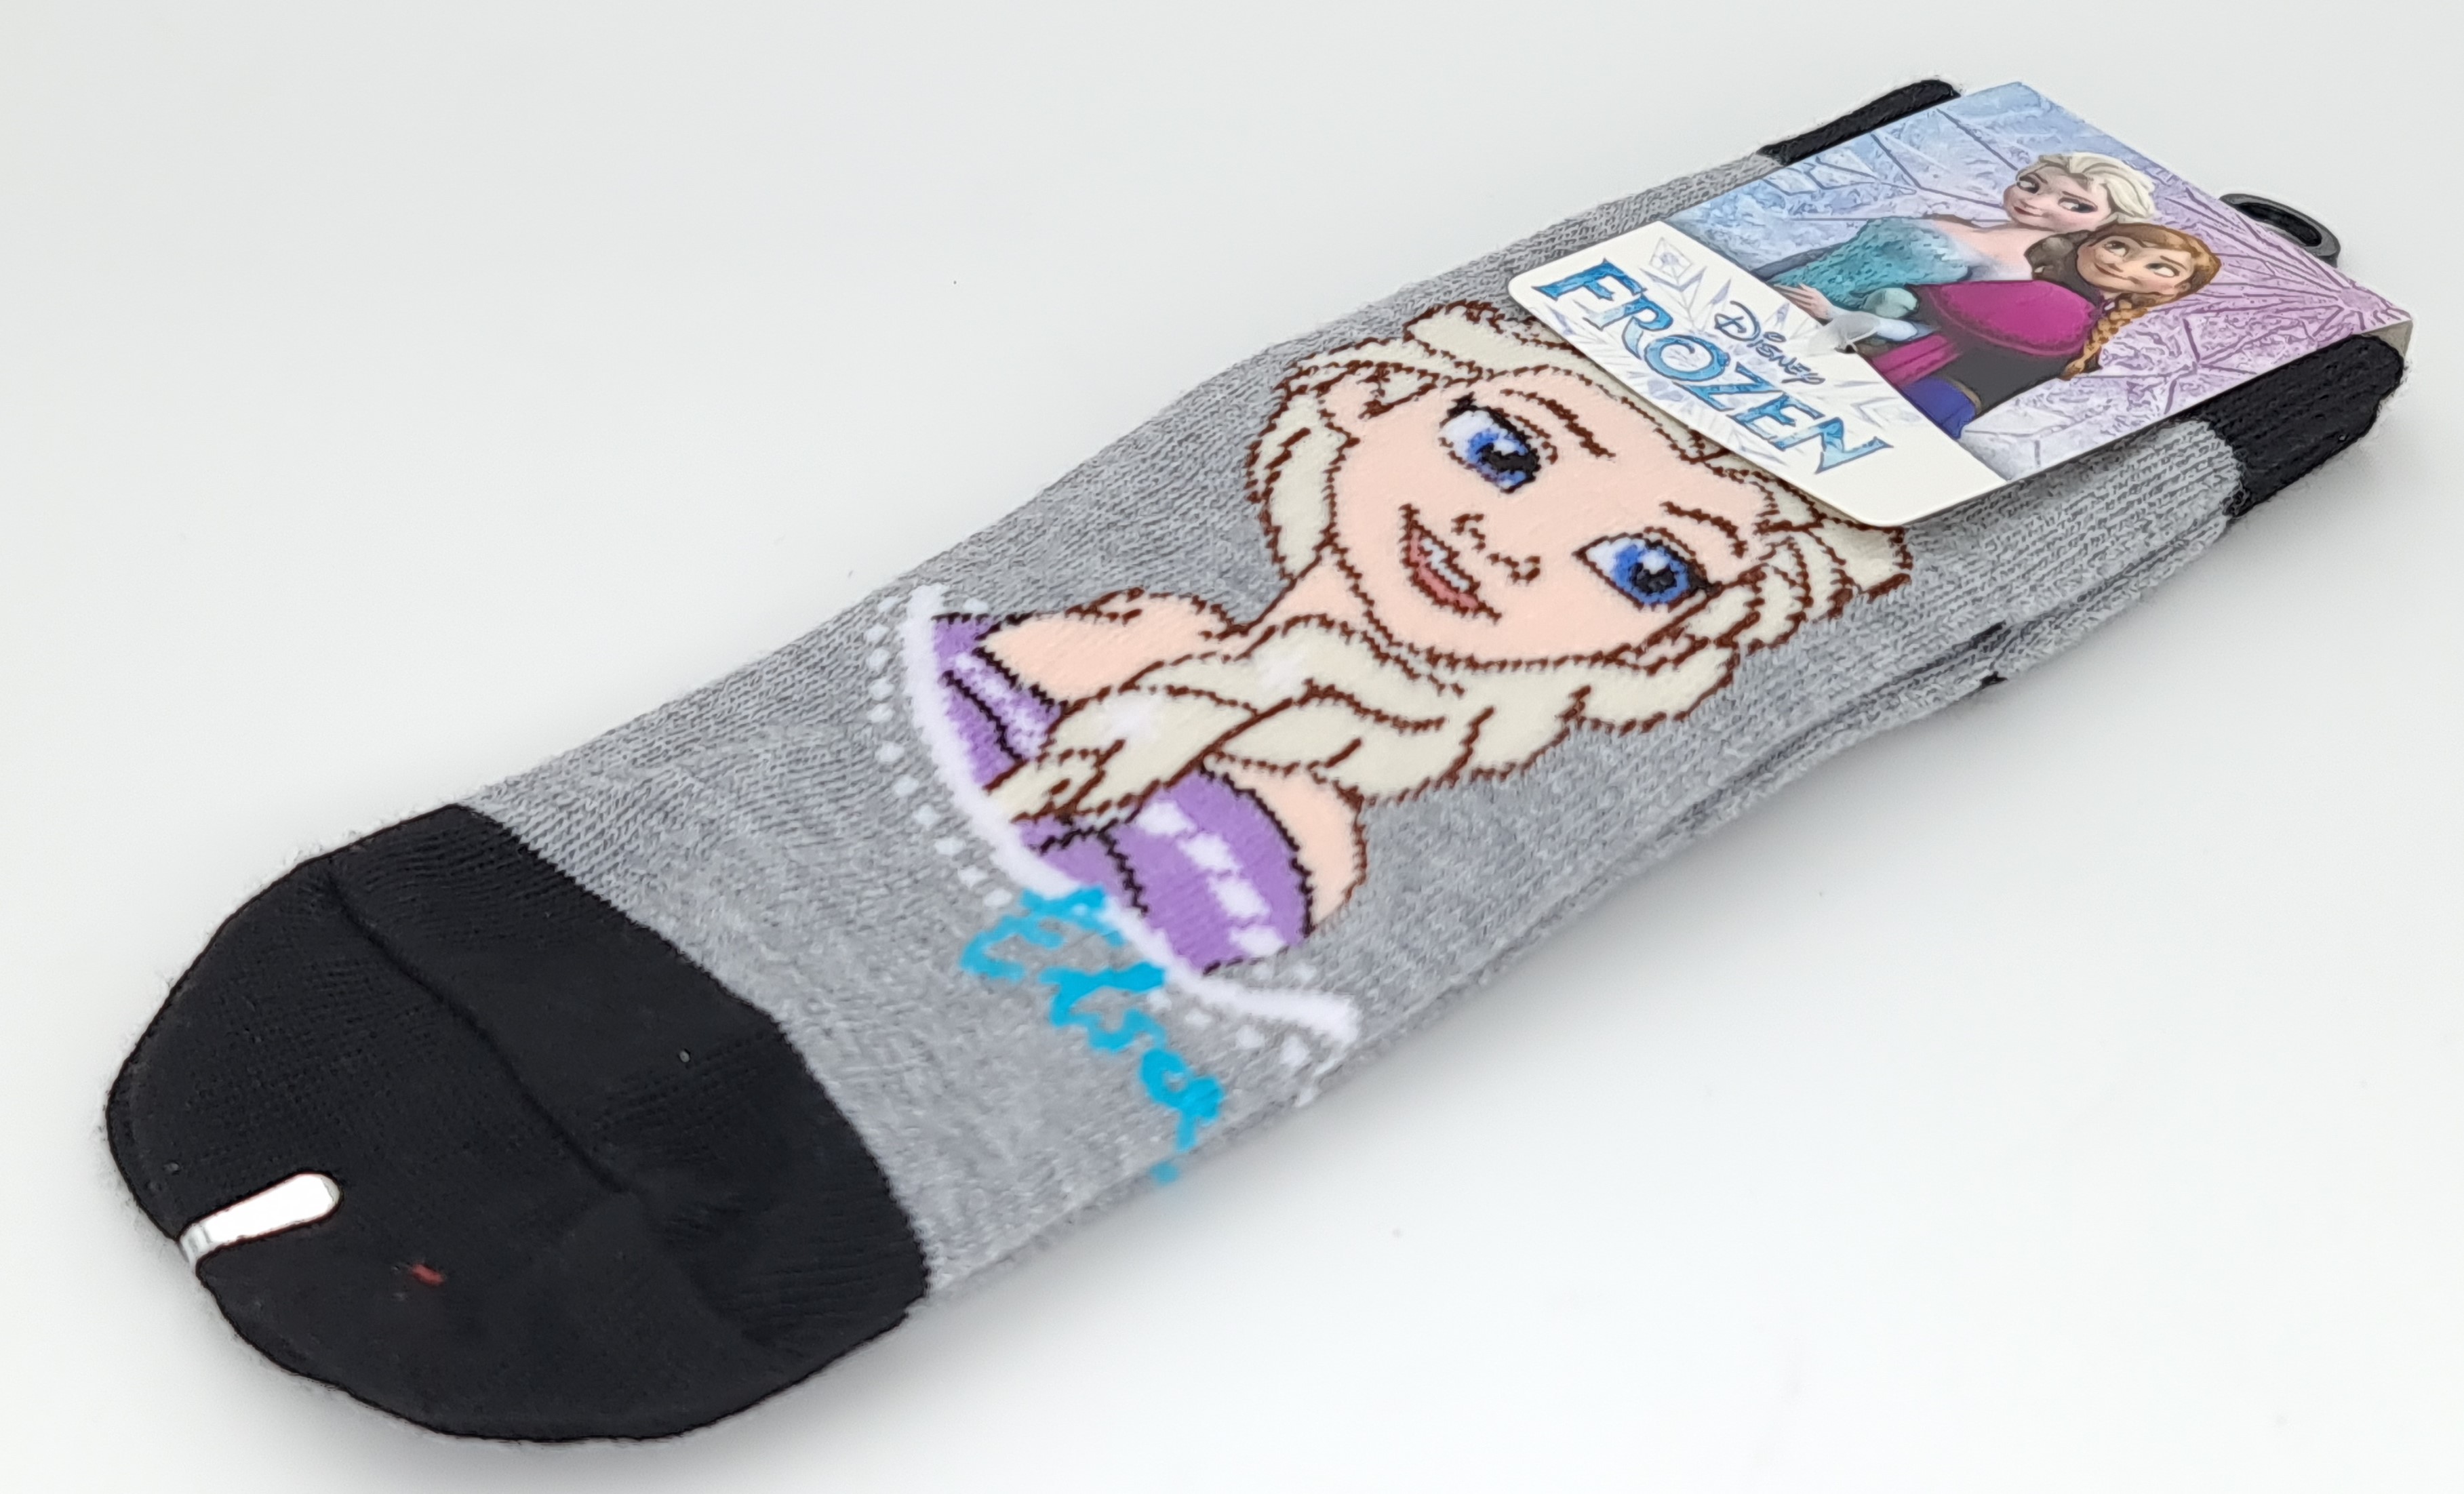 ถุงเท้า Disney Frozen ถุงเท้าลิขสิทธิ์ สีสันสดใส